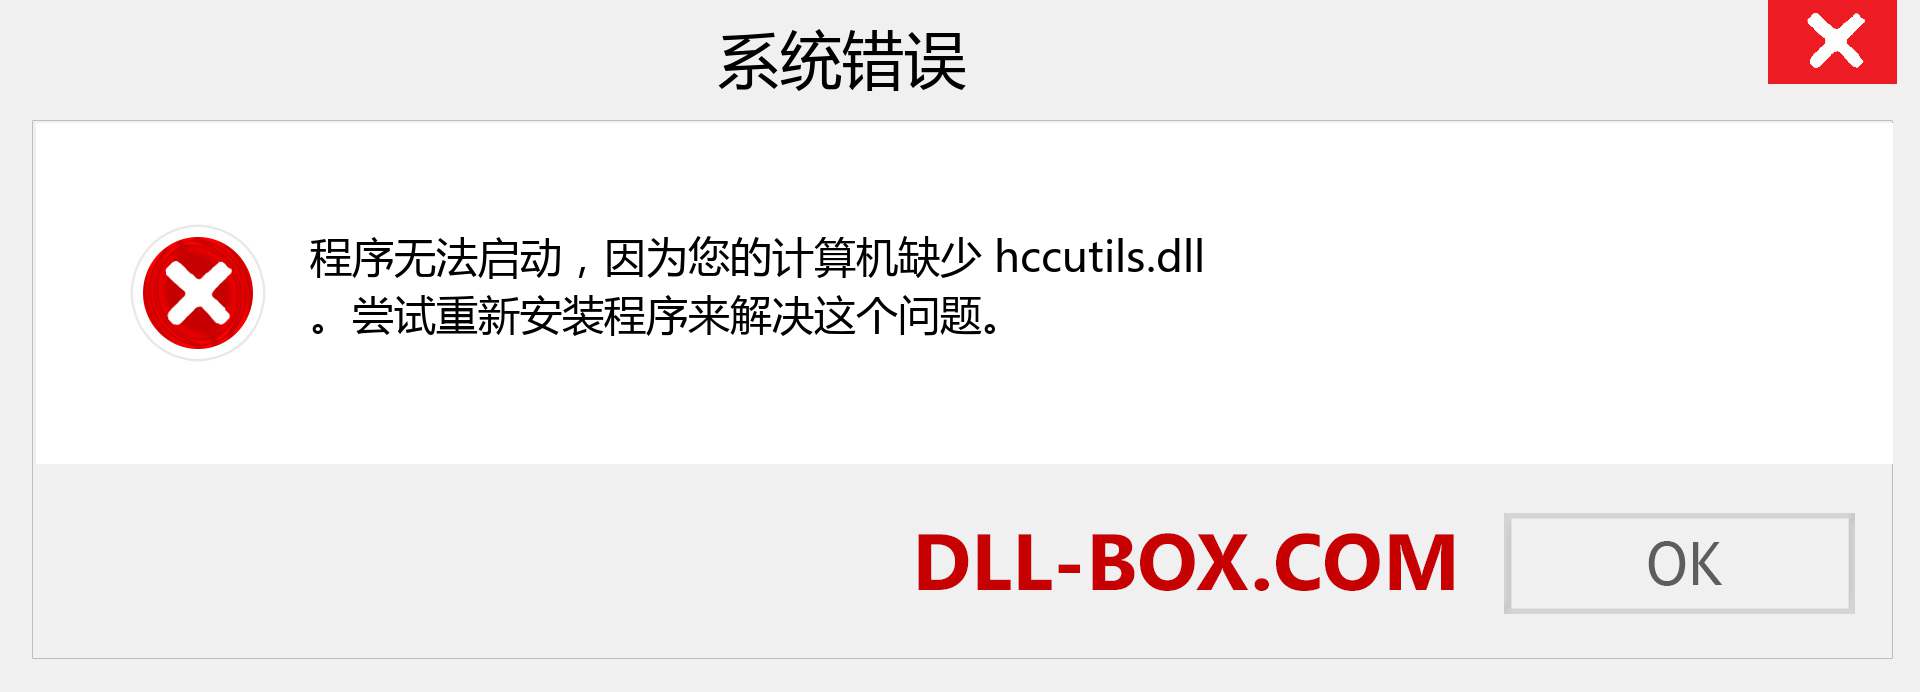 hccutils.dll 文件丢失？。 适用于 Windows 7、8、10 的下载 - 修复 Windows、照片、图像上的 hccutils dll 丢失错误